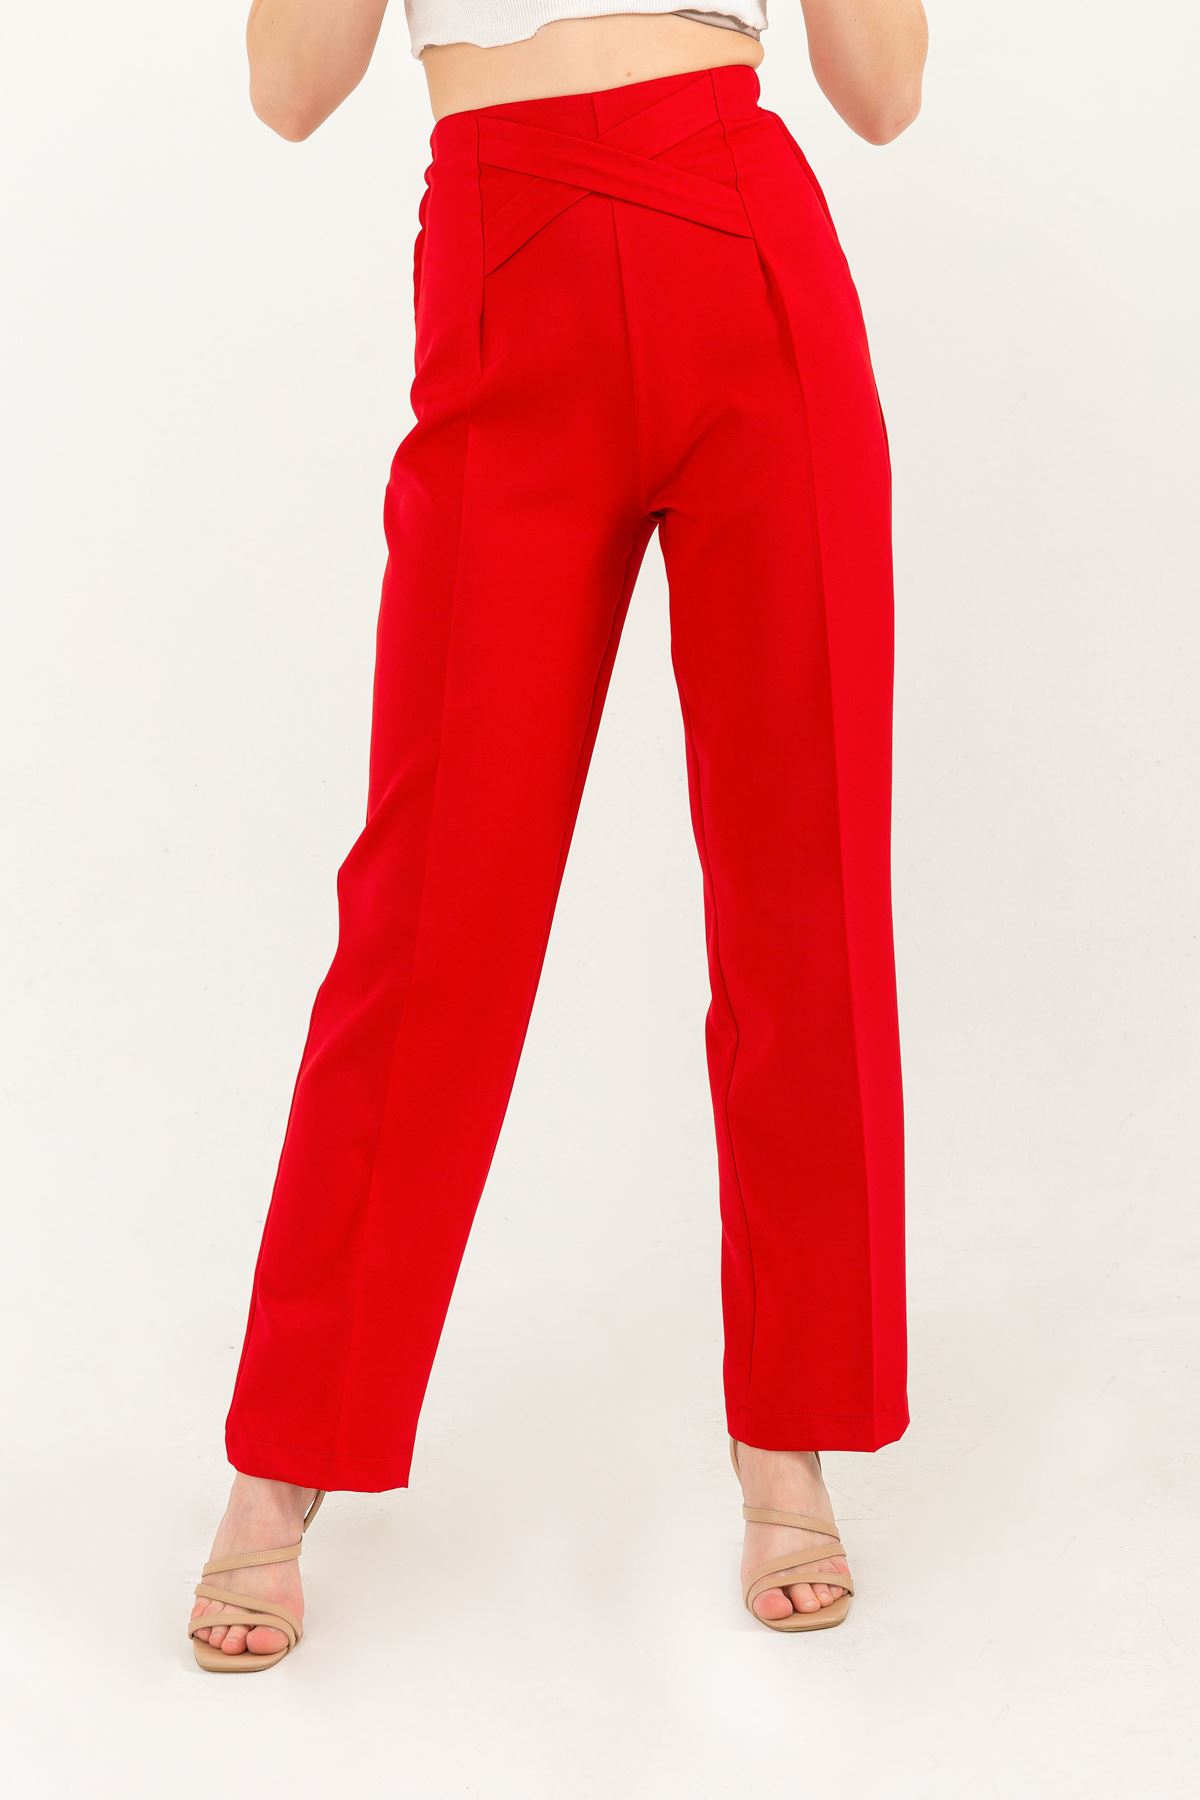 Atlas Kumaş Uzun Boy Bel Detaylı Klasik Kadın Pantolon-Kırmızı